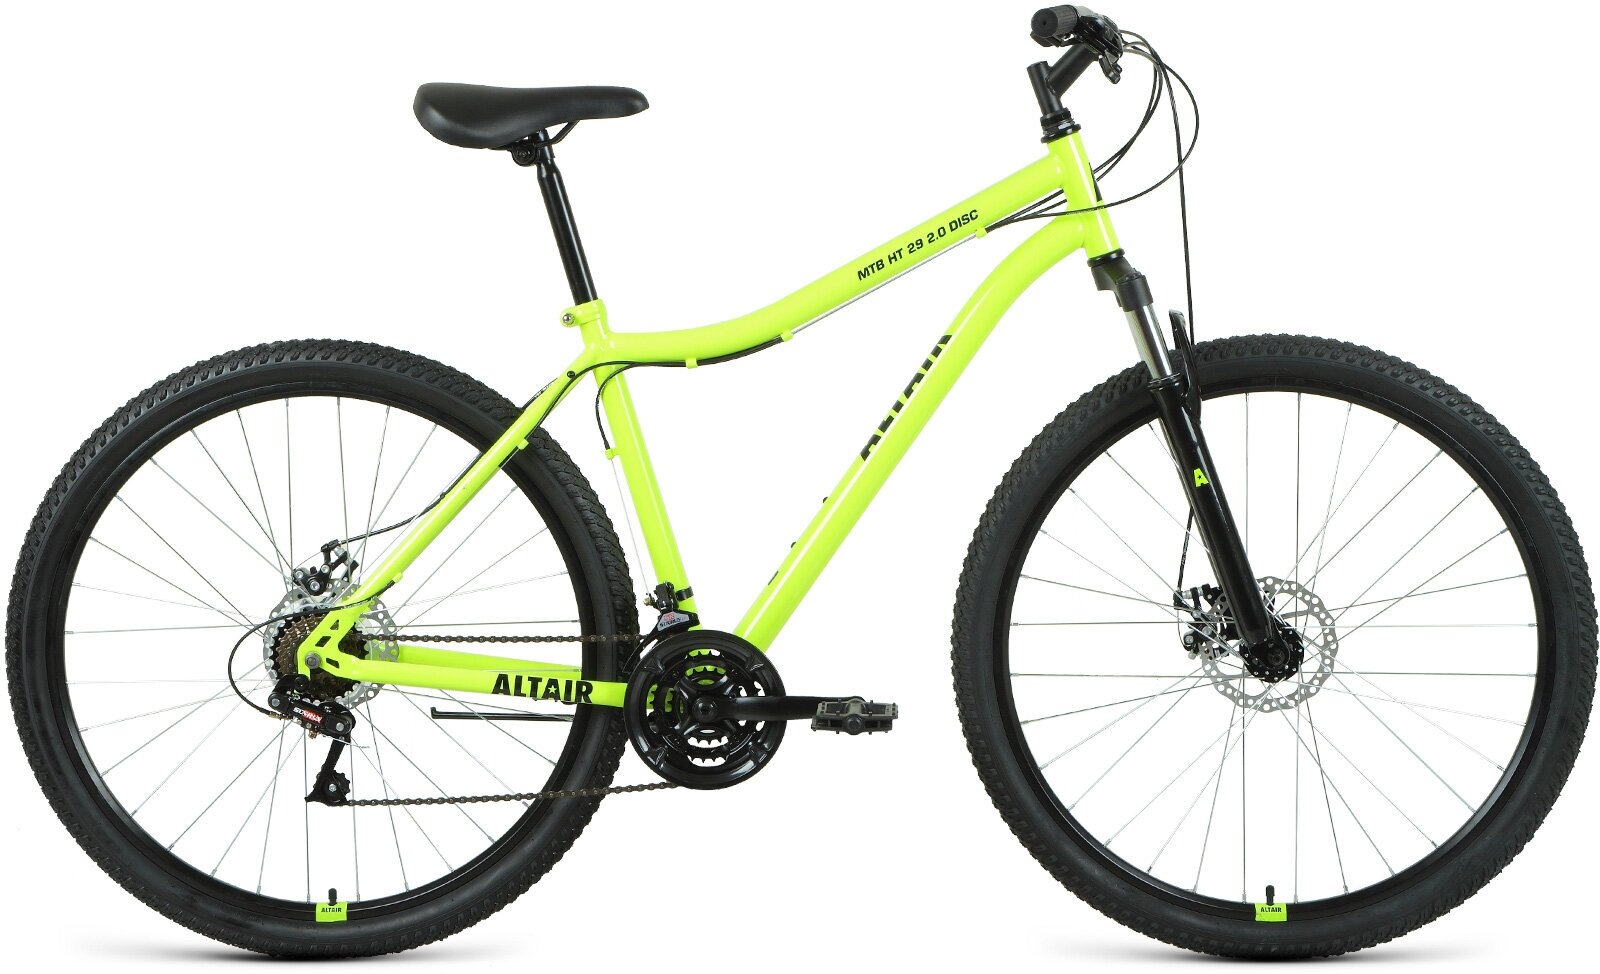 Горный велосипед Altair MTB HT 29 2.0 Disc, год 2021, цвет Зеленый-Черный, ростовка 19